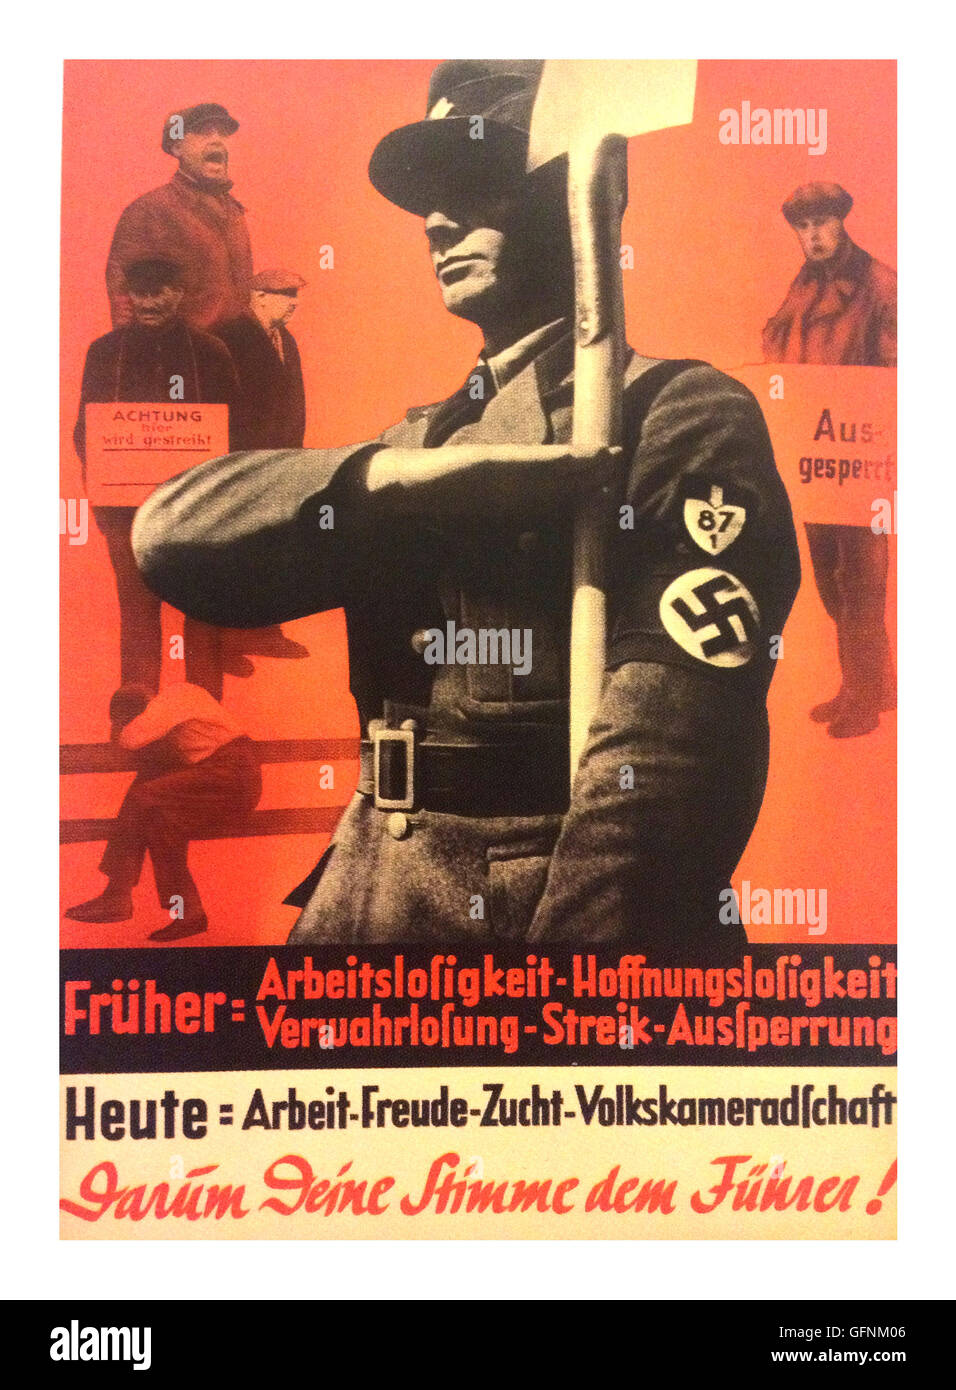 1937 NSDAP ADOLF HITLER Propaganda Poster, mit einem Nsdap-Mitglied in Uniform tragen ein Hakenkreuz Armbinde, salutierte, als er eine Schaufel, mit arbeitslosen oder streikende Arbeiter im Hintergrund. "Am 29. März, Stimme für Adolf Hitler, der am Ende der Arbeitslosigkeit und Bürgerkrieg in Deutschland" ein. Stockfoto